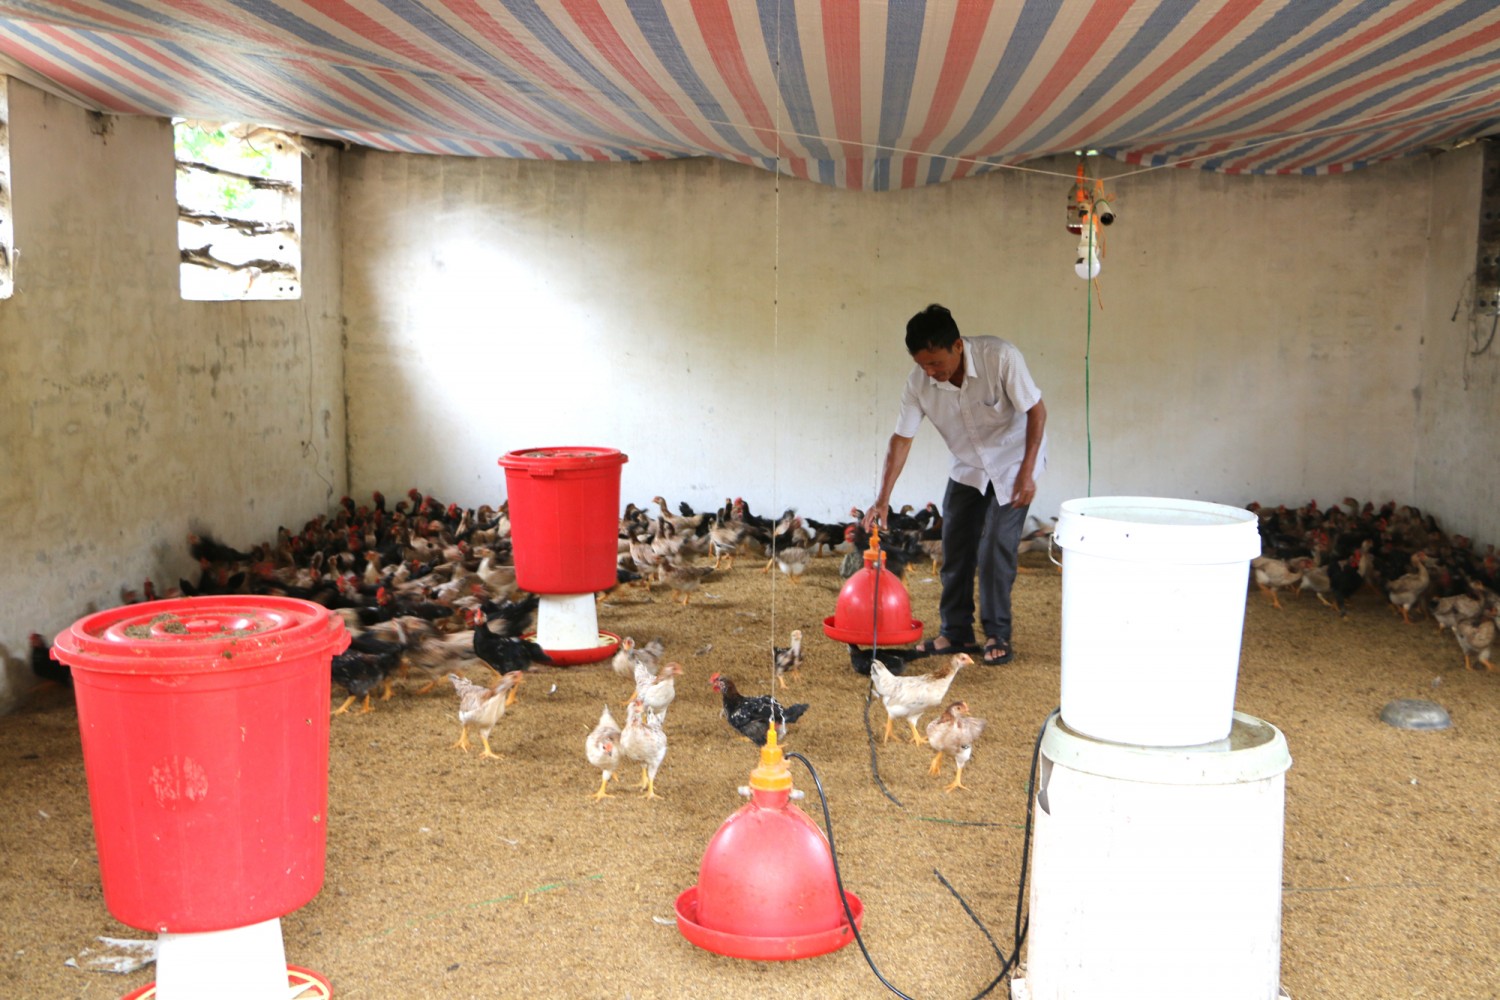 Quỳnh Tân phát triển nhiều trang trại chăn nuôi gà